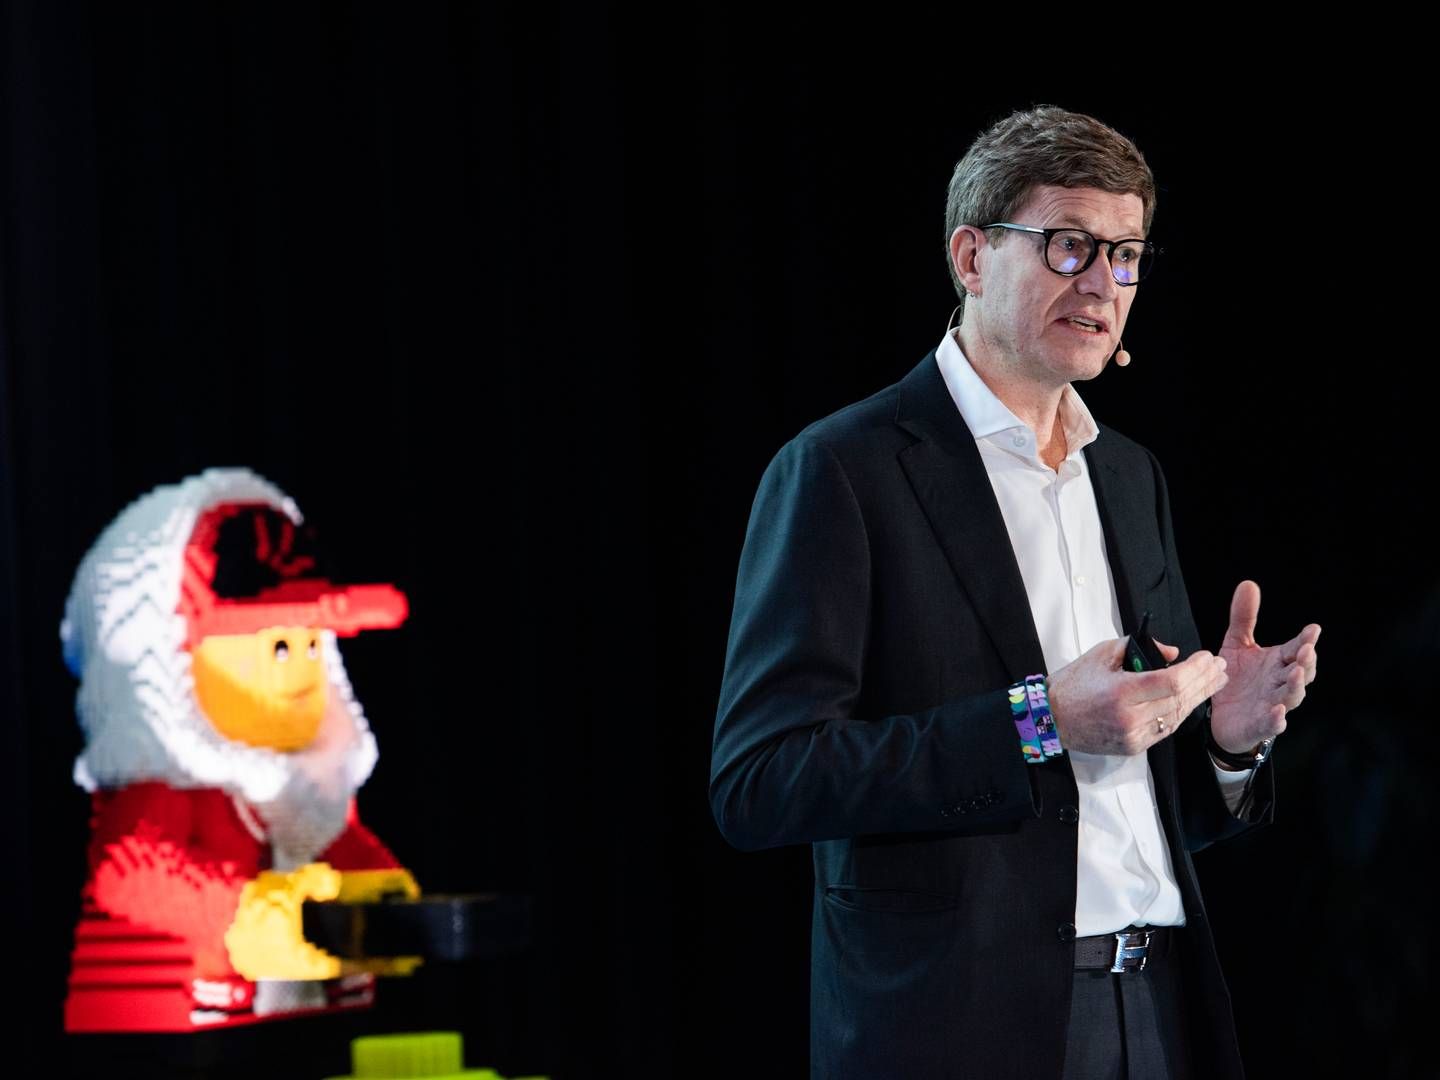 Det har ifølge Legos adm. direktør, Niels Christiansen, ikke været muligt at finde et alternativ til oliebaseret plastik. | Foto: Mads Frost